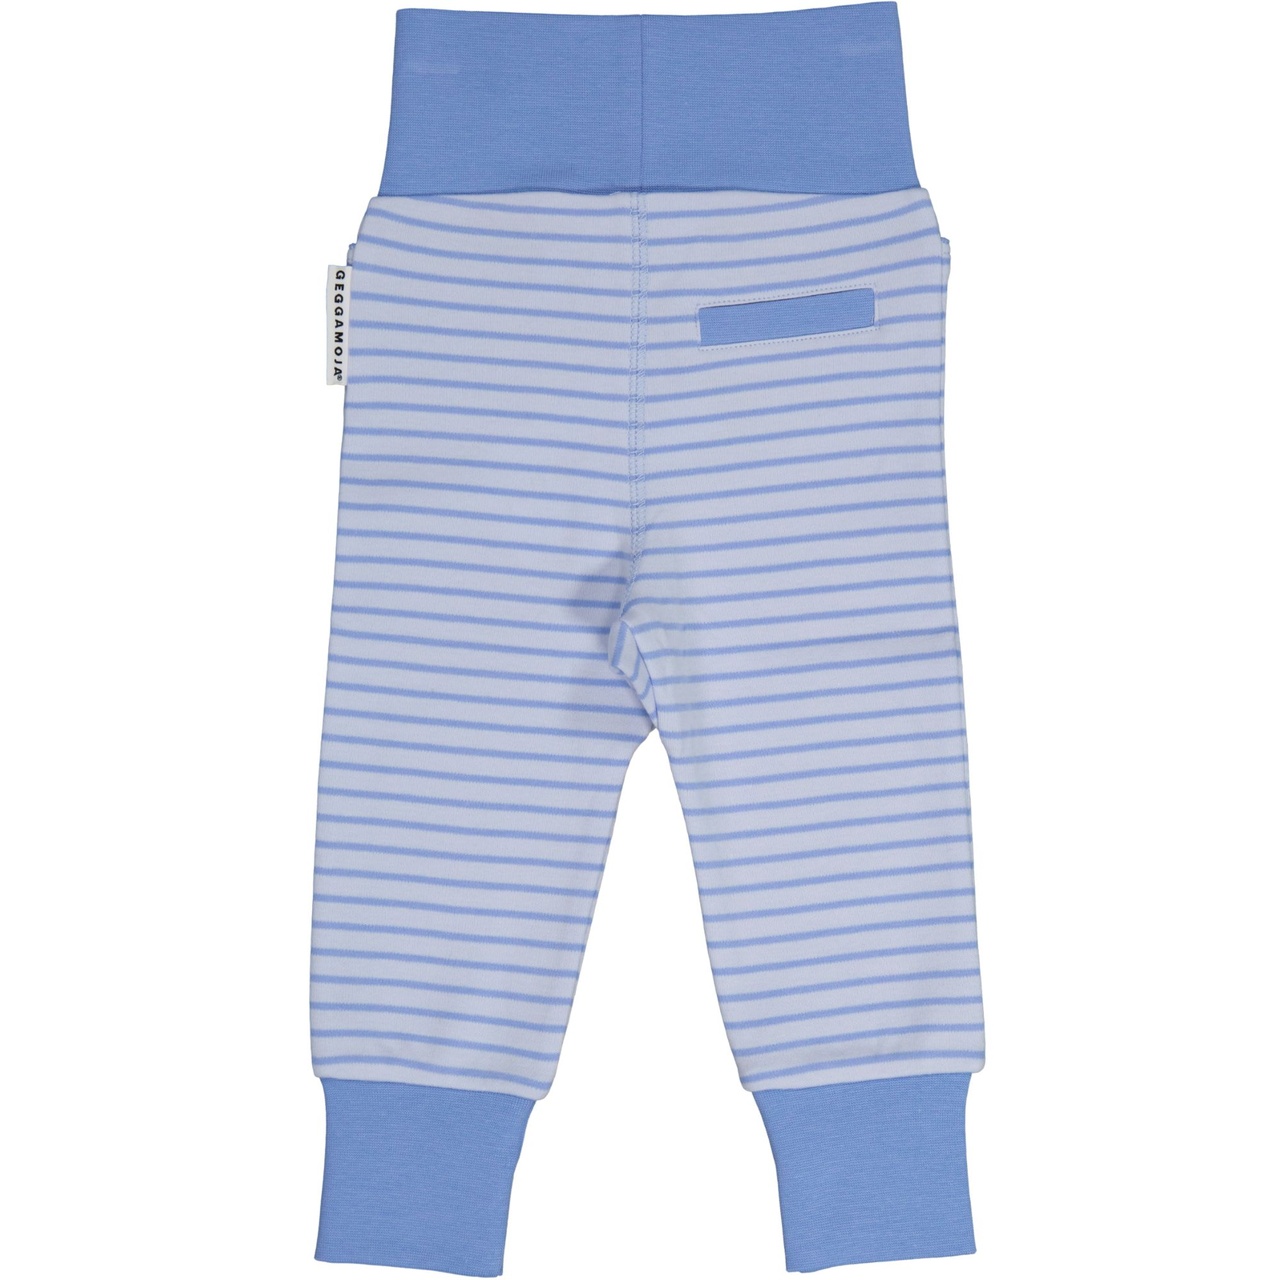 Vauvan housut Light Sininen/Sininen  74/80